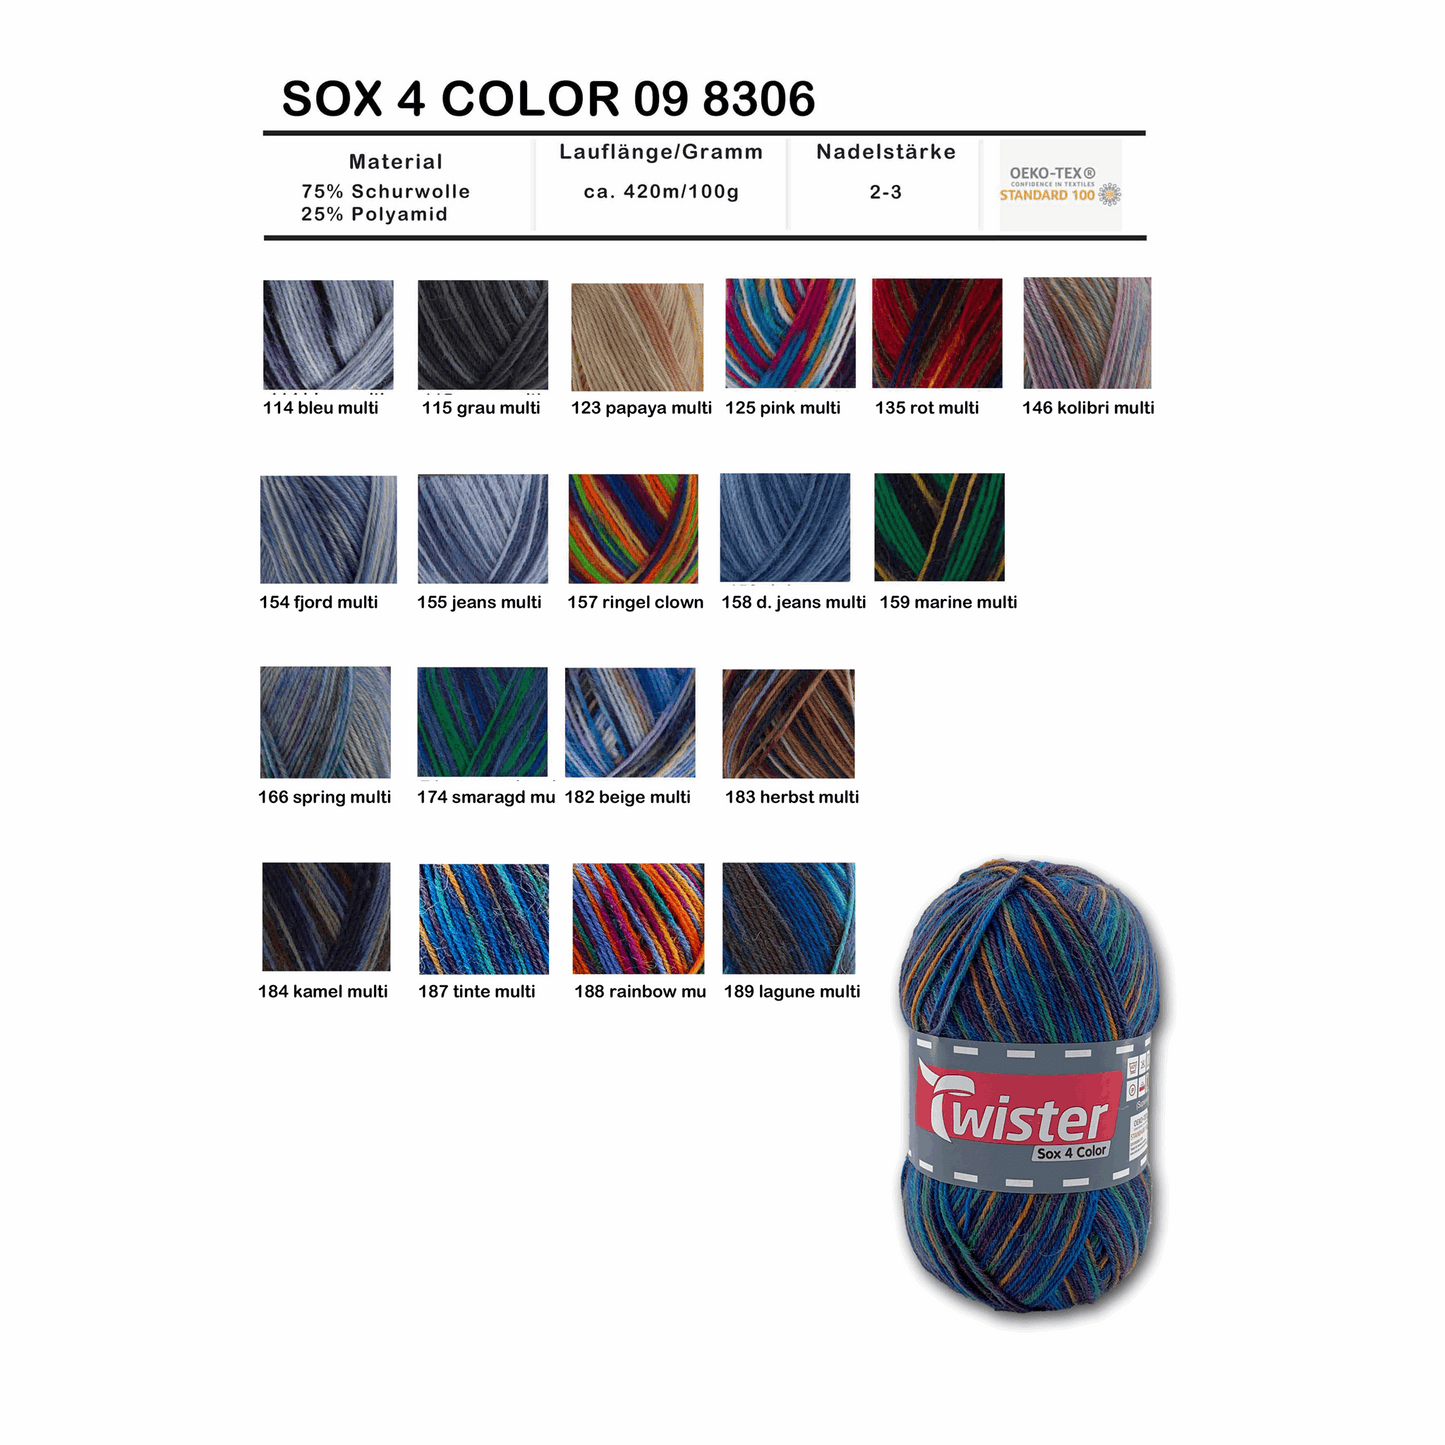 Twister Sox4 Color superwash, papaya multi, 98306, Farbe 123